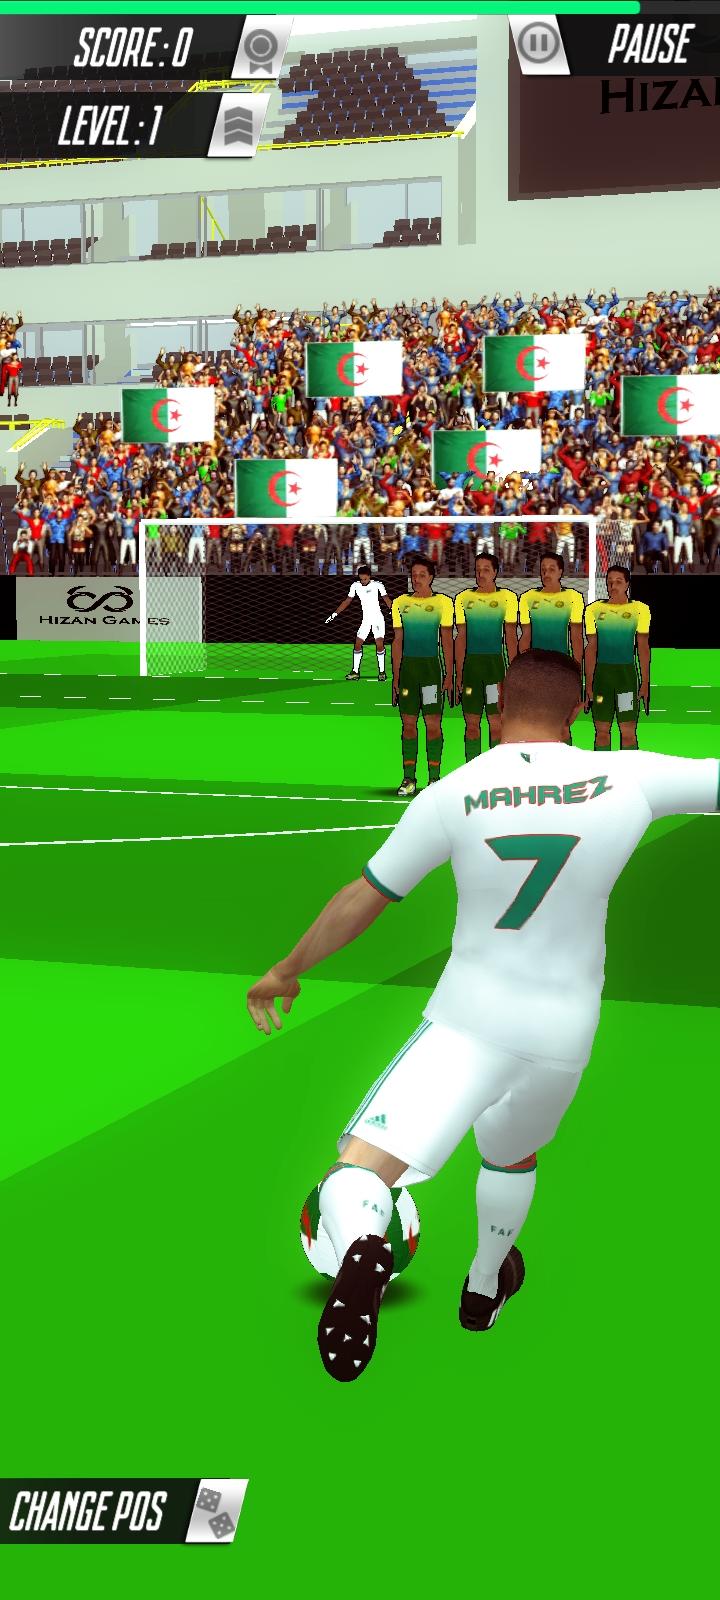 Screenshot 1 of Golpe de fútbol Dz 1.0